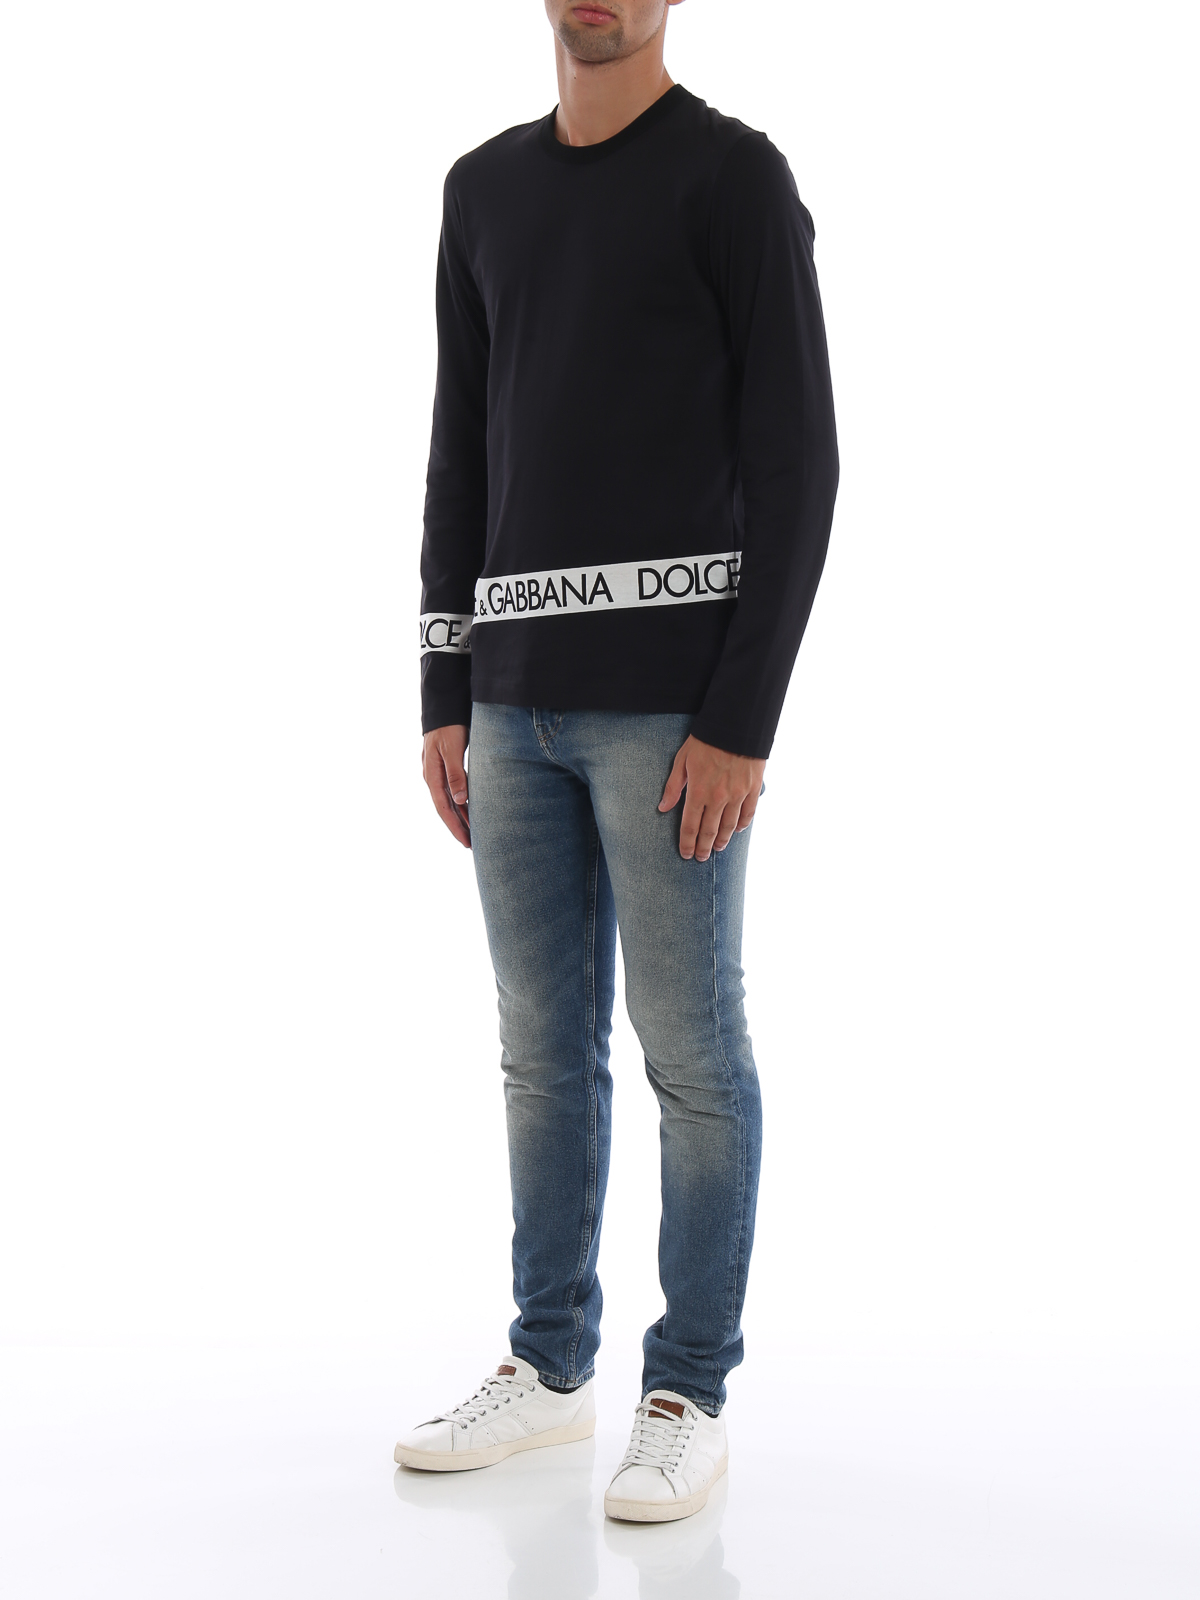 T-shirts Dolce & Gabbana - #DGMILLENNIALS long sleeve black cotton 